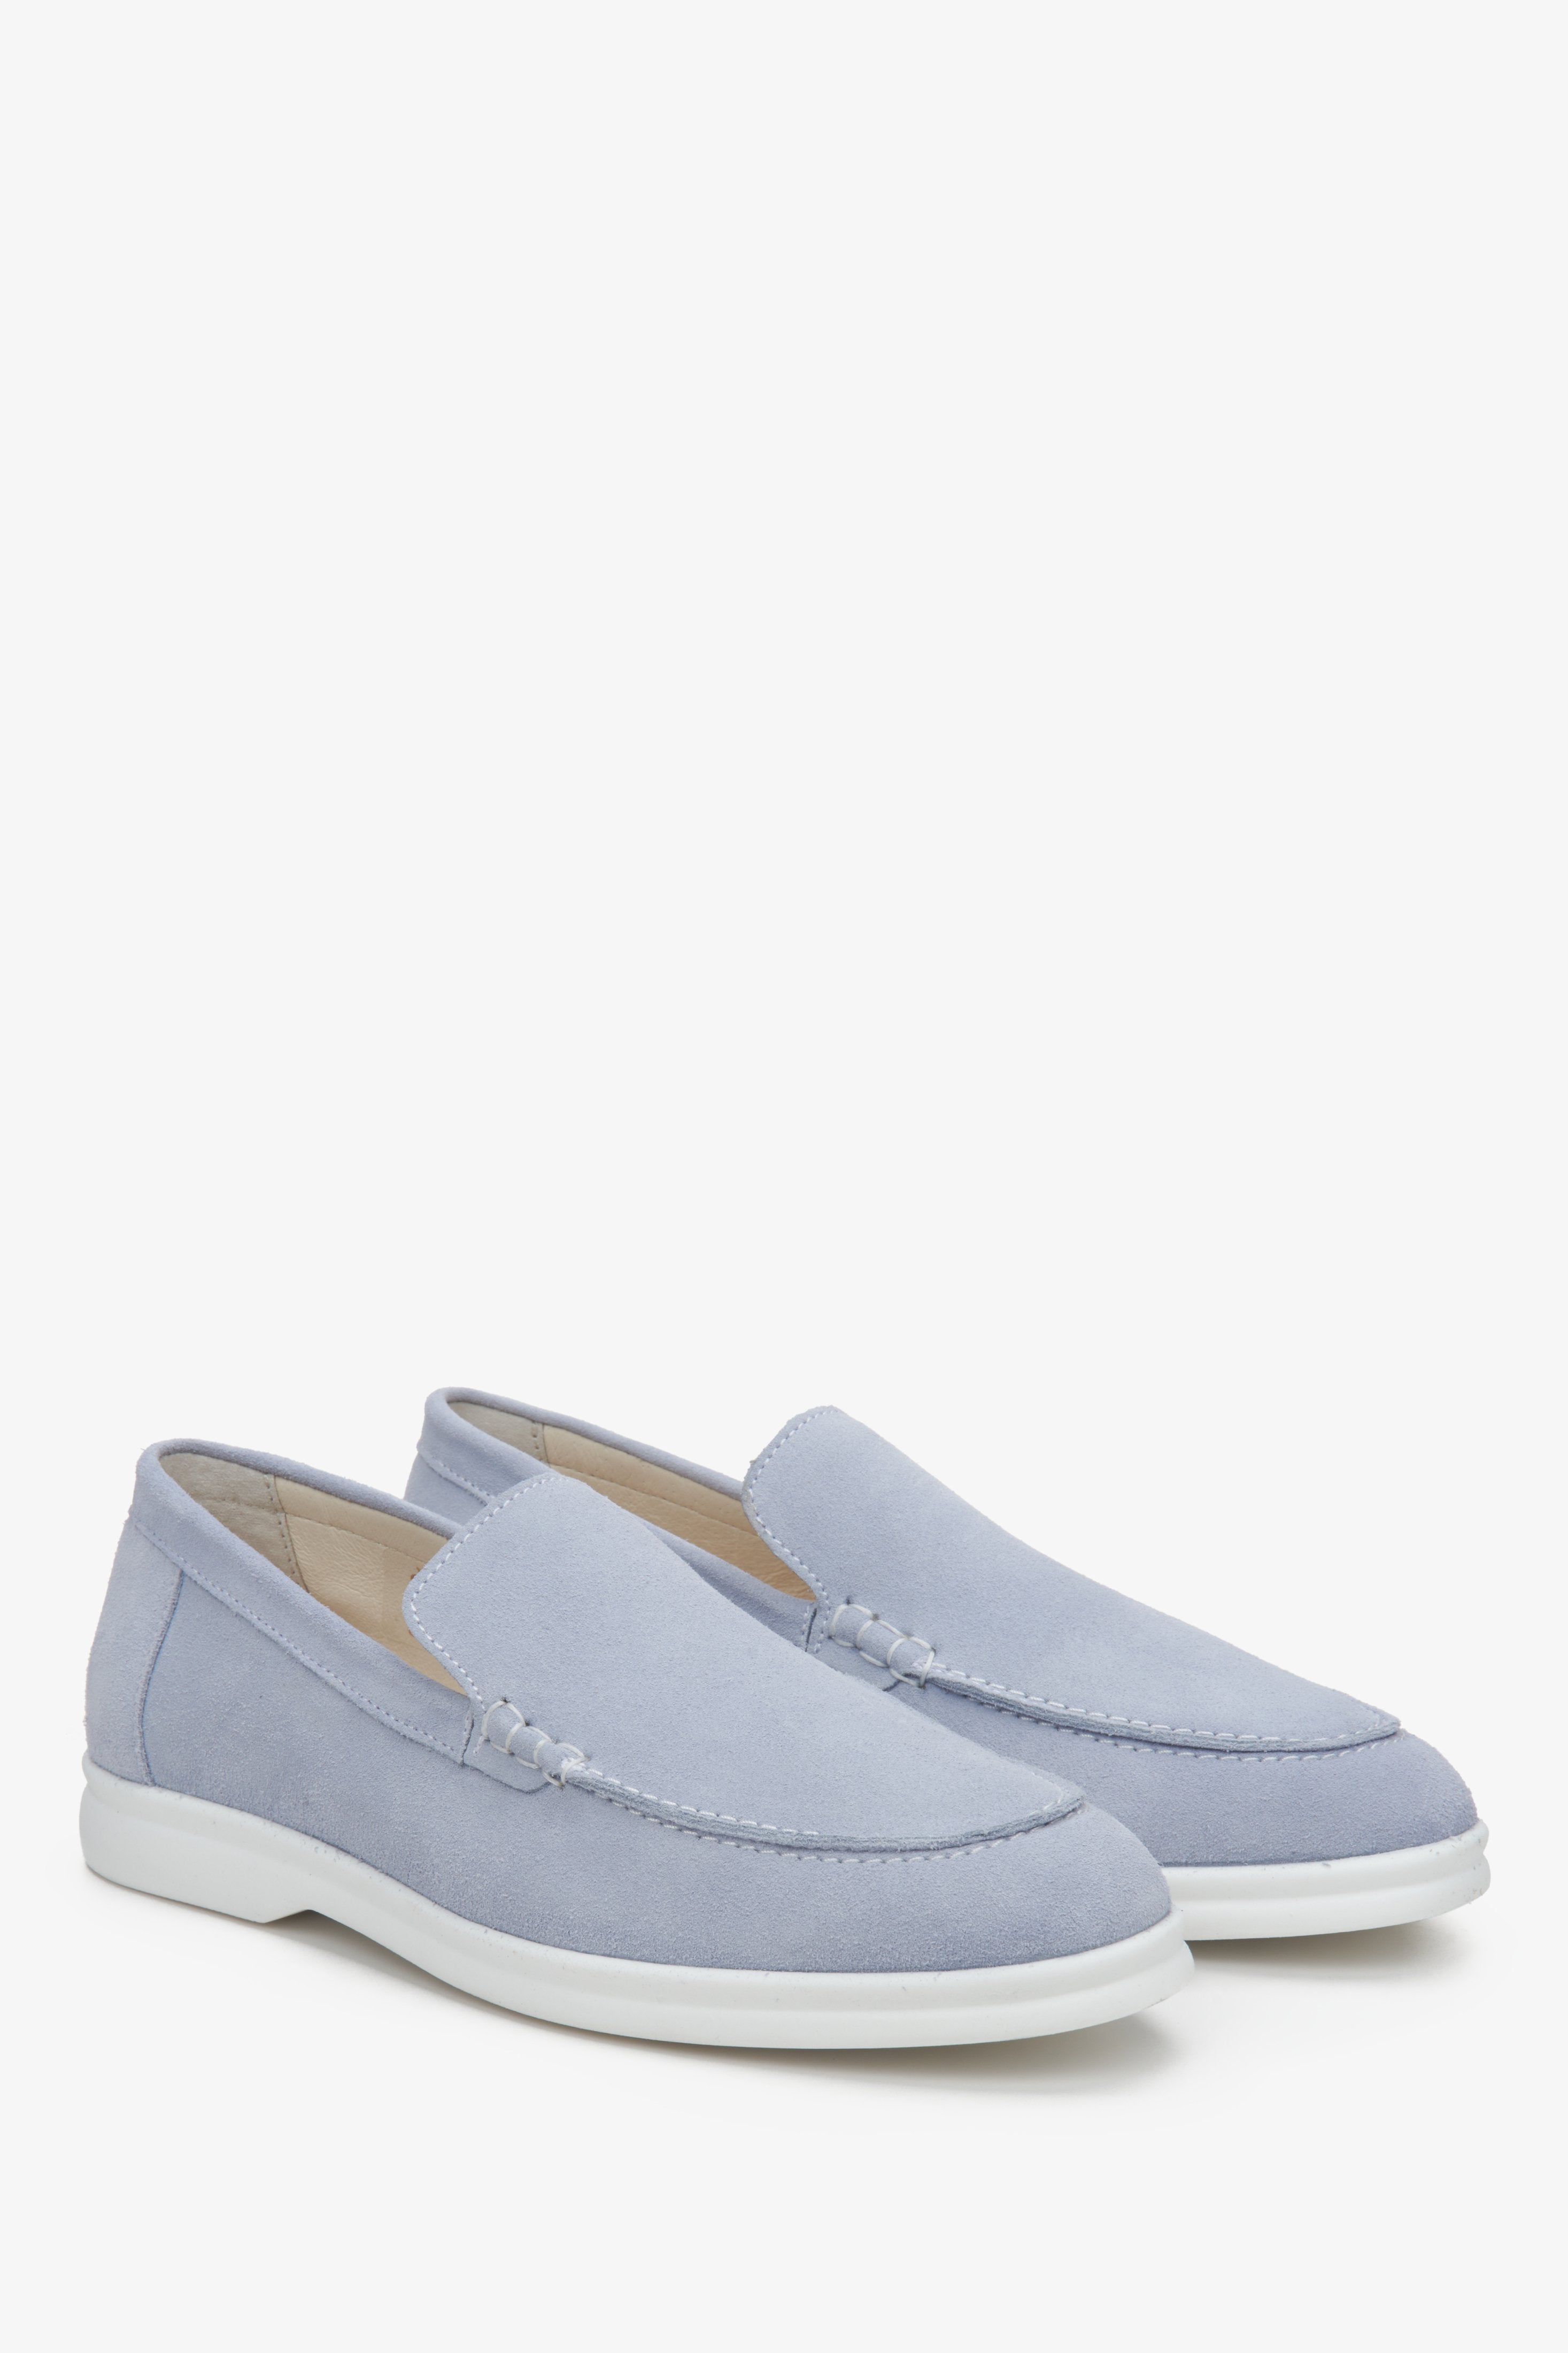 Loafersy damskie zamszowe w kolorze niebieskim Estro - prezentacja czubka buta i przyszwy bocznej.